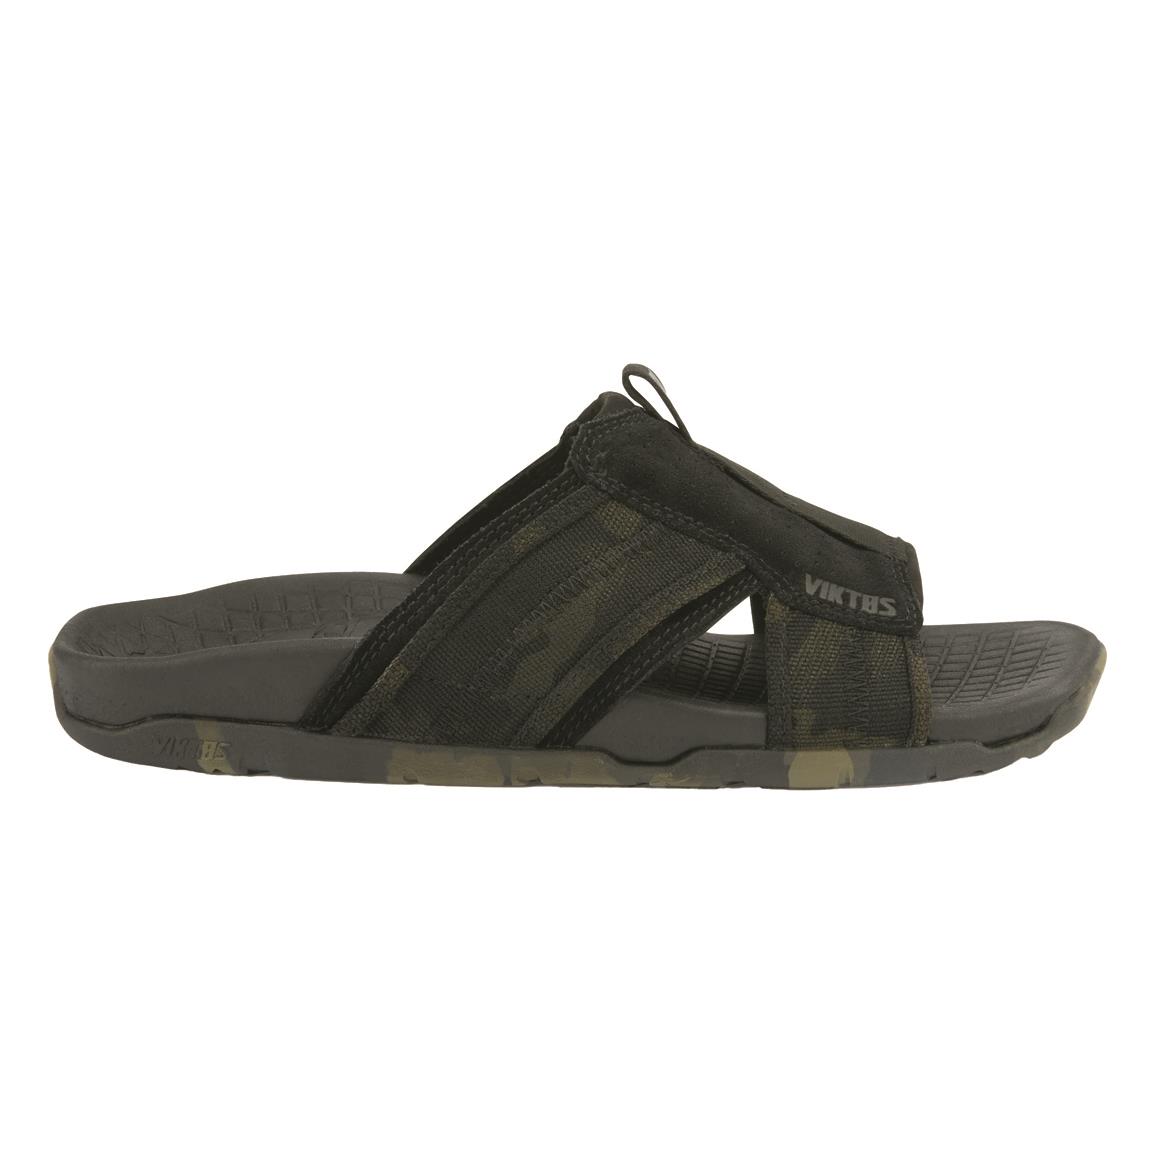 KEEN Men's Targhee III Sandals - 713645, Boat & Water Shoes at ...